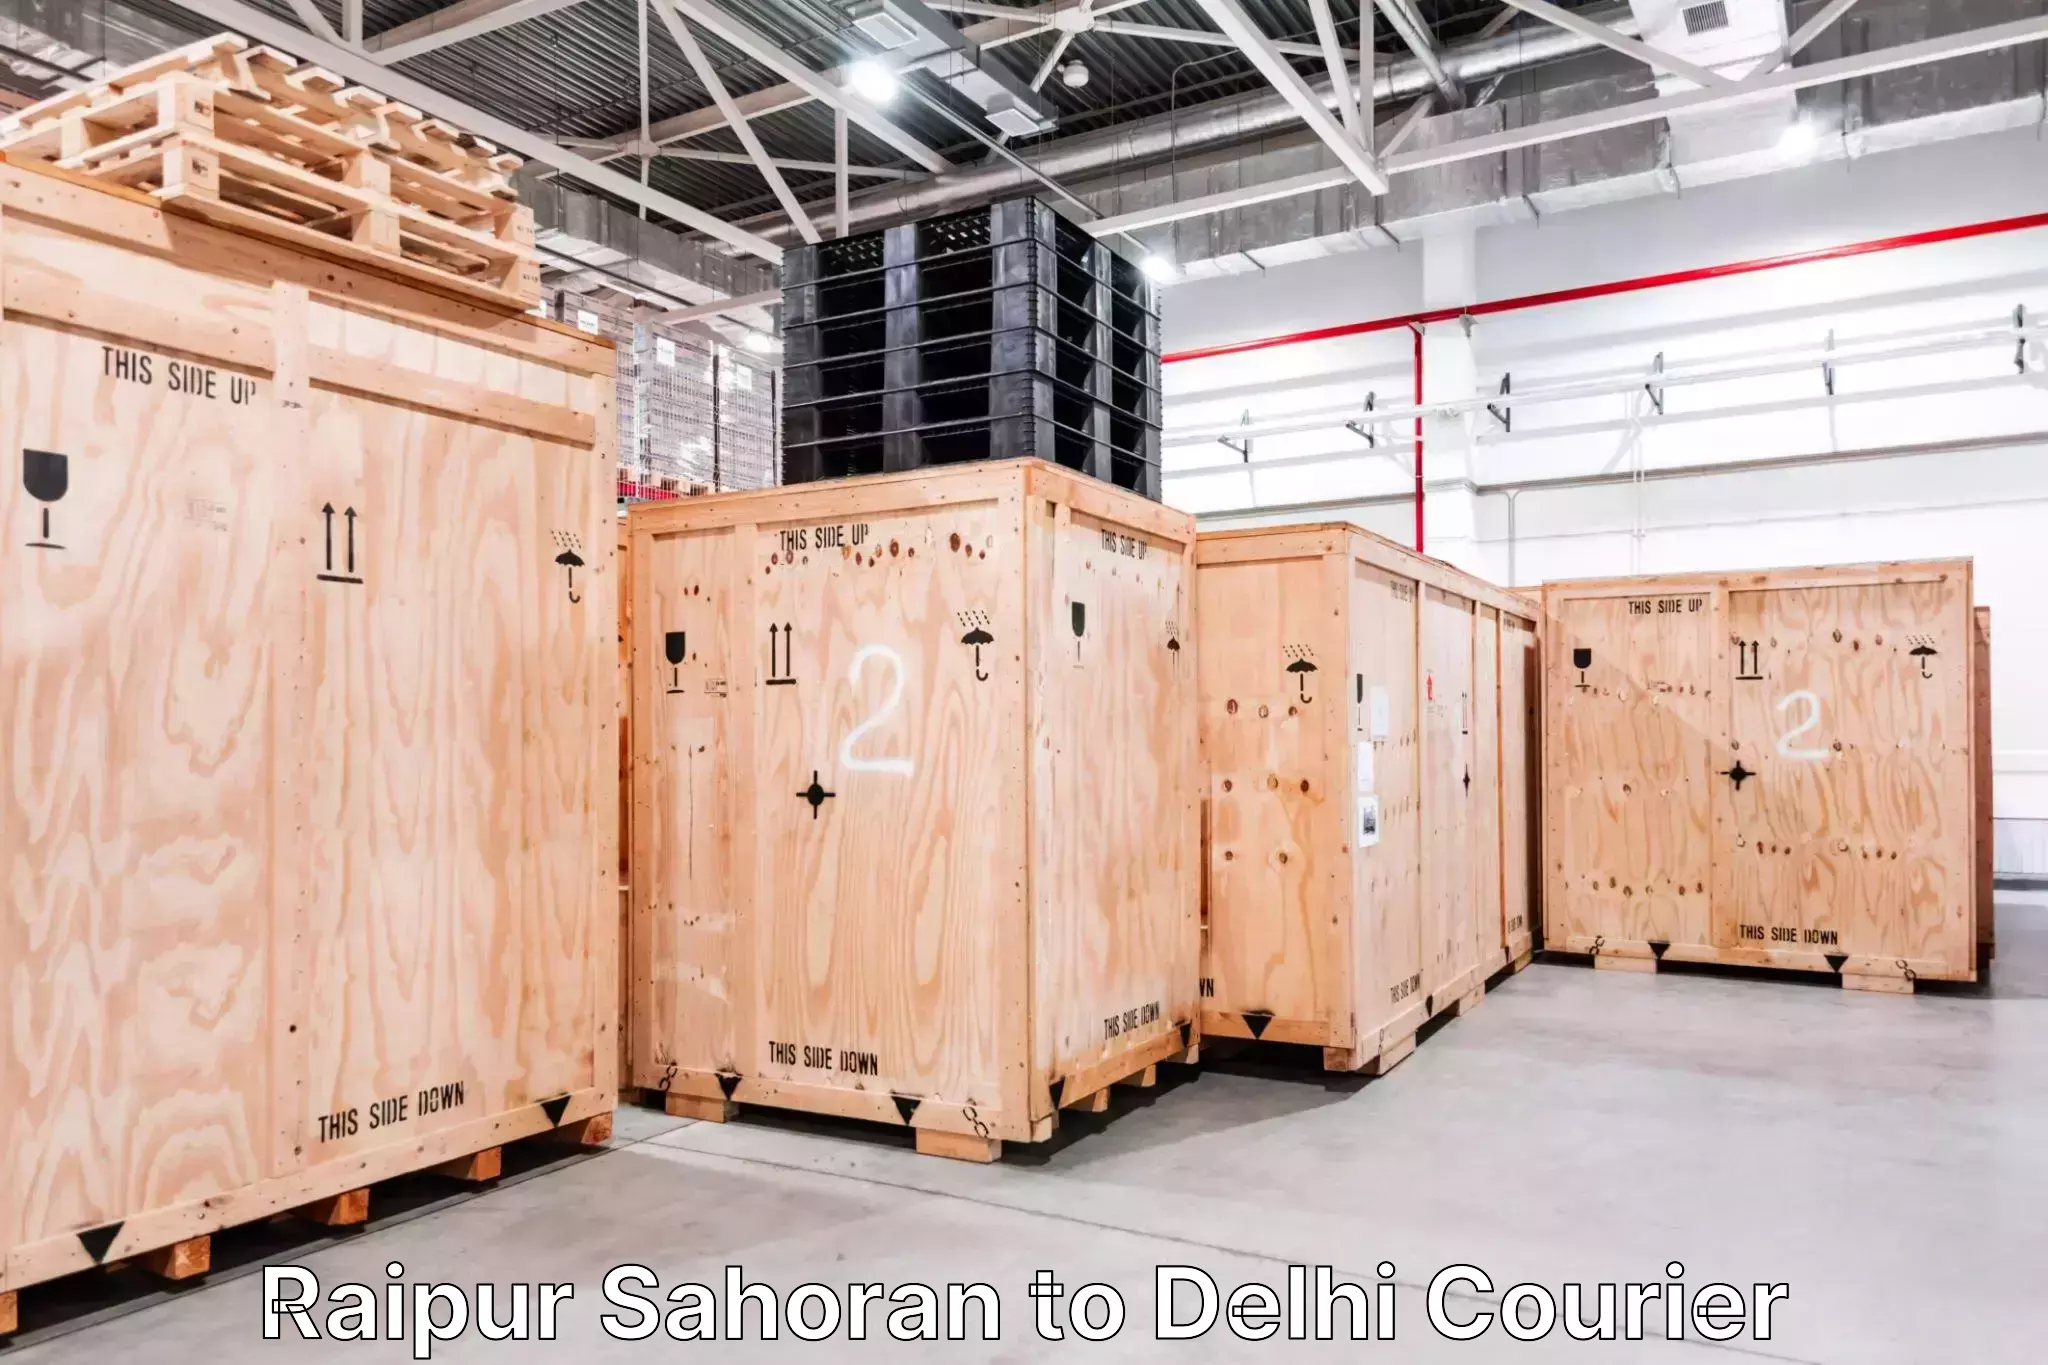 Luggage delivery app Raipur Sahoran to Delhi